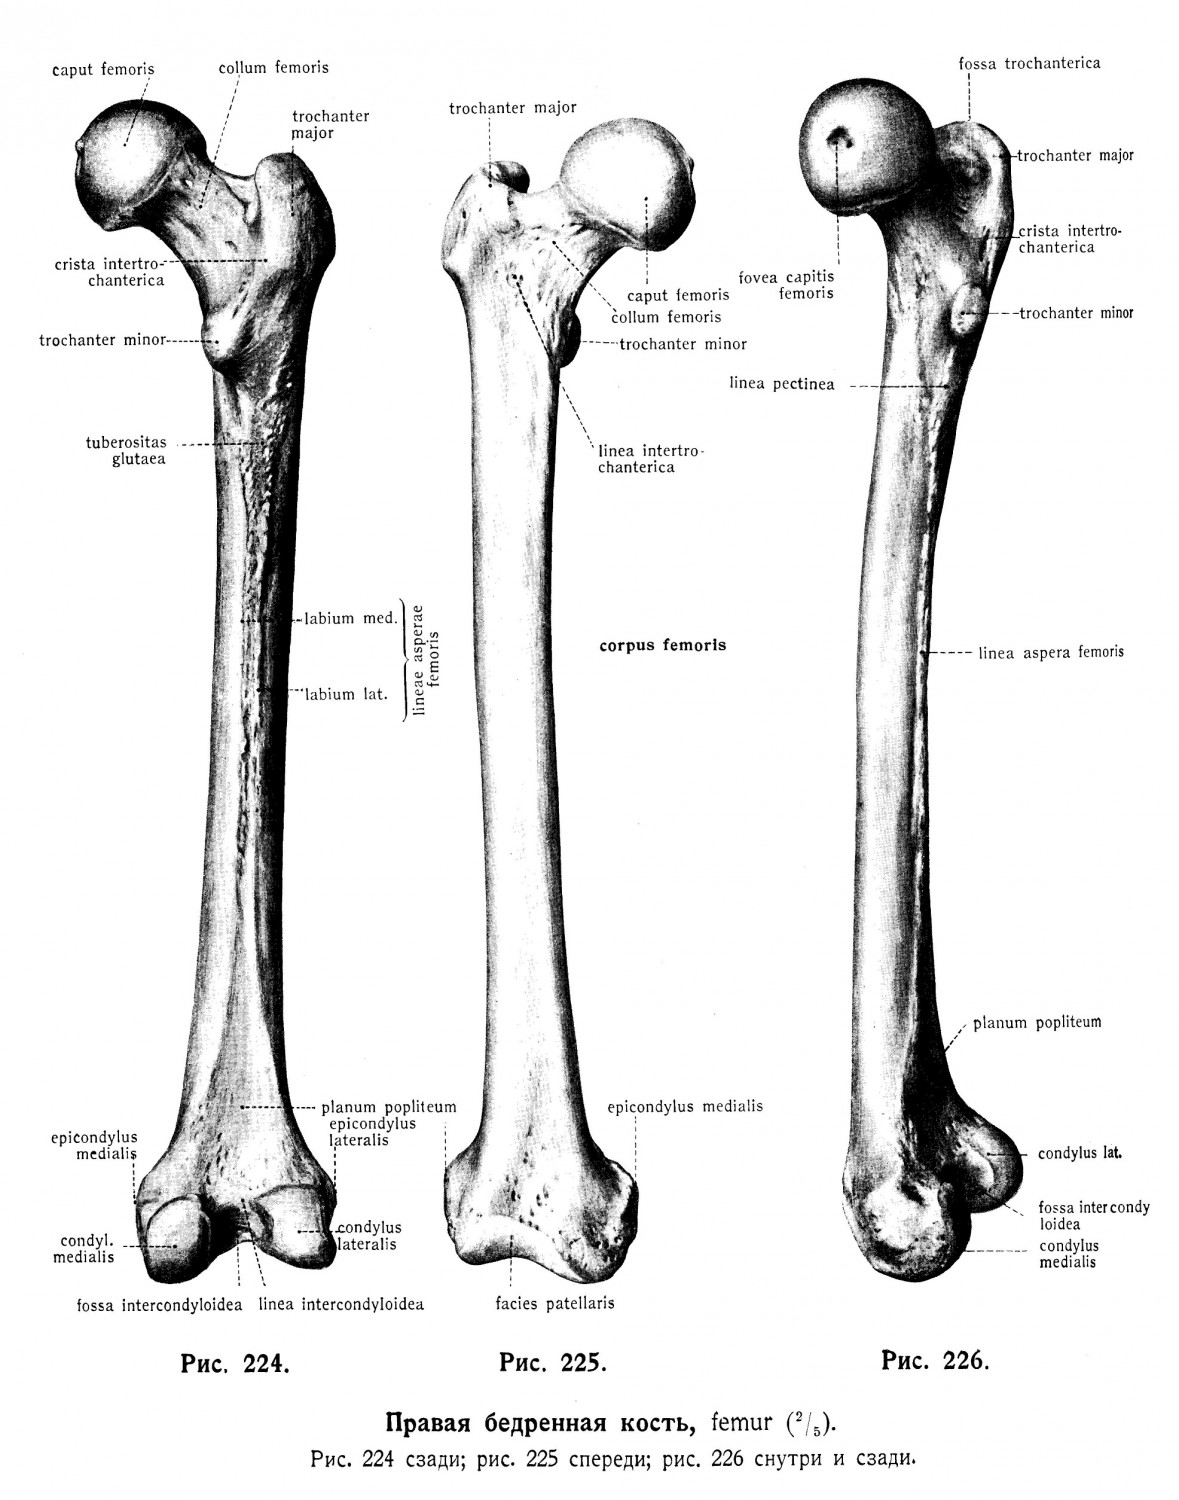 Бедренная кость, femur